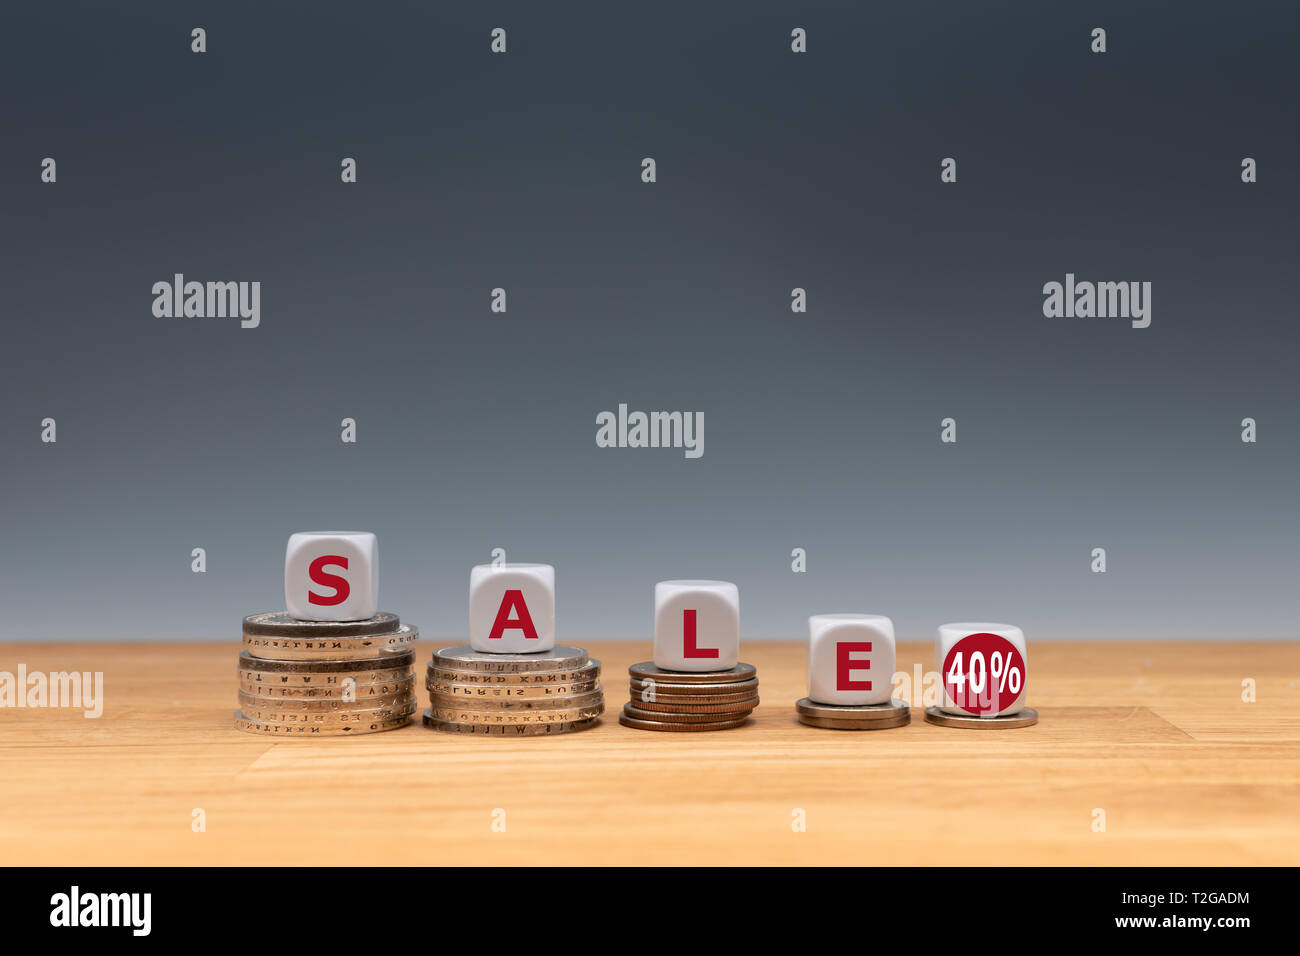 Simbolo per una vendita con un sconto del 40 %. Dadi posti sulle monete formano l'espressione 'sale 40%'. Foto Stock